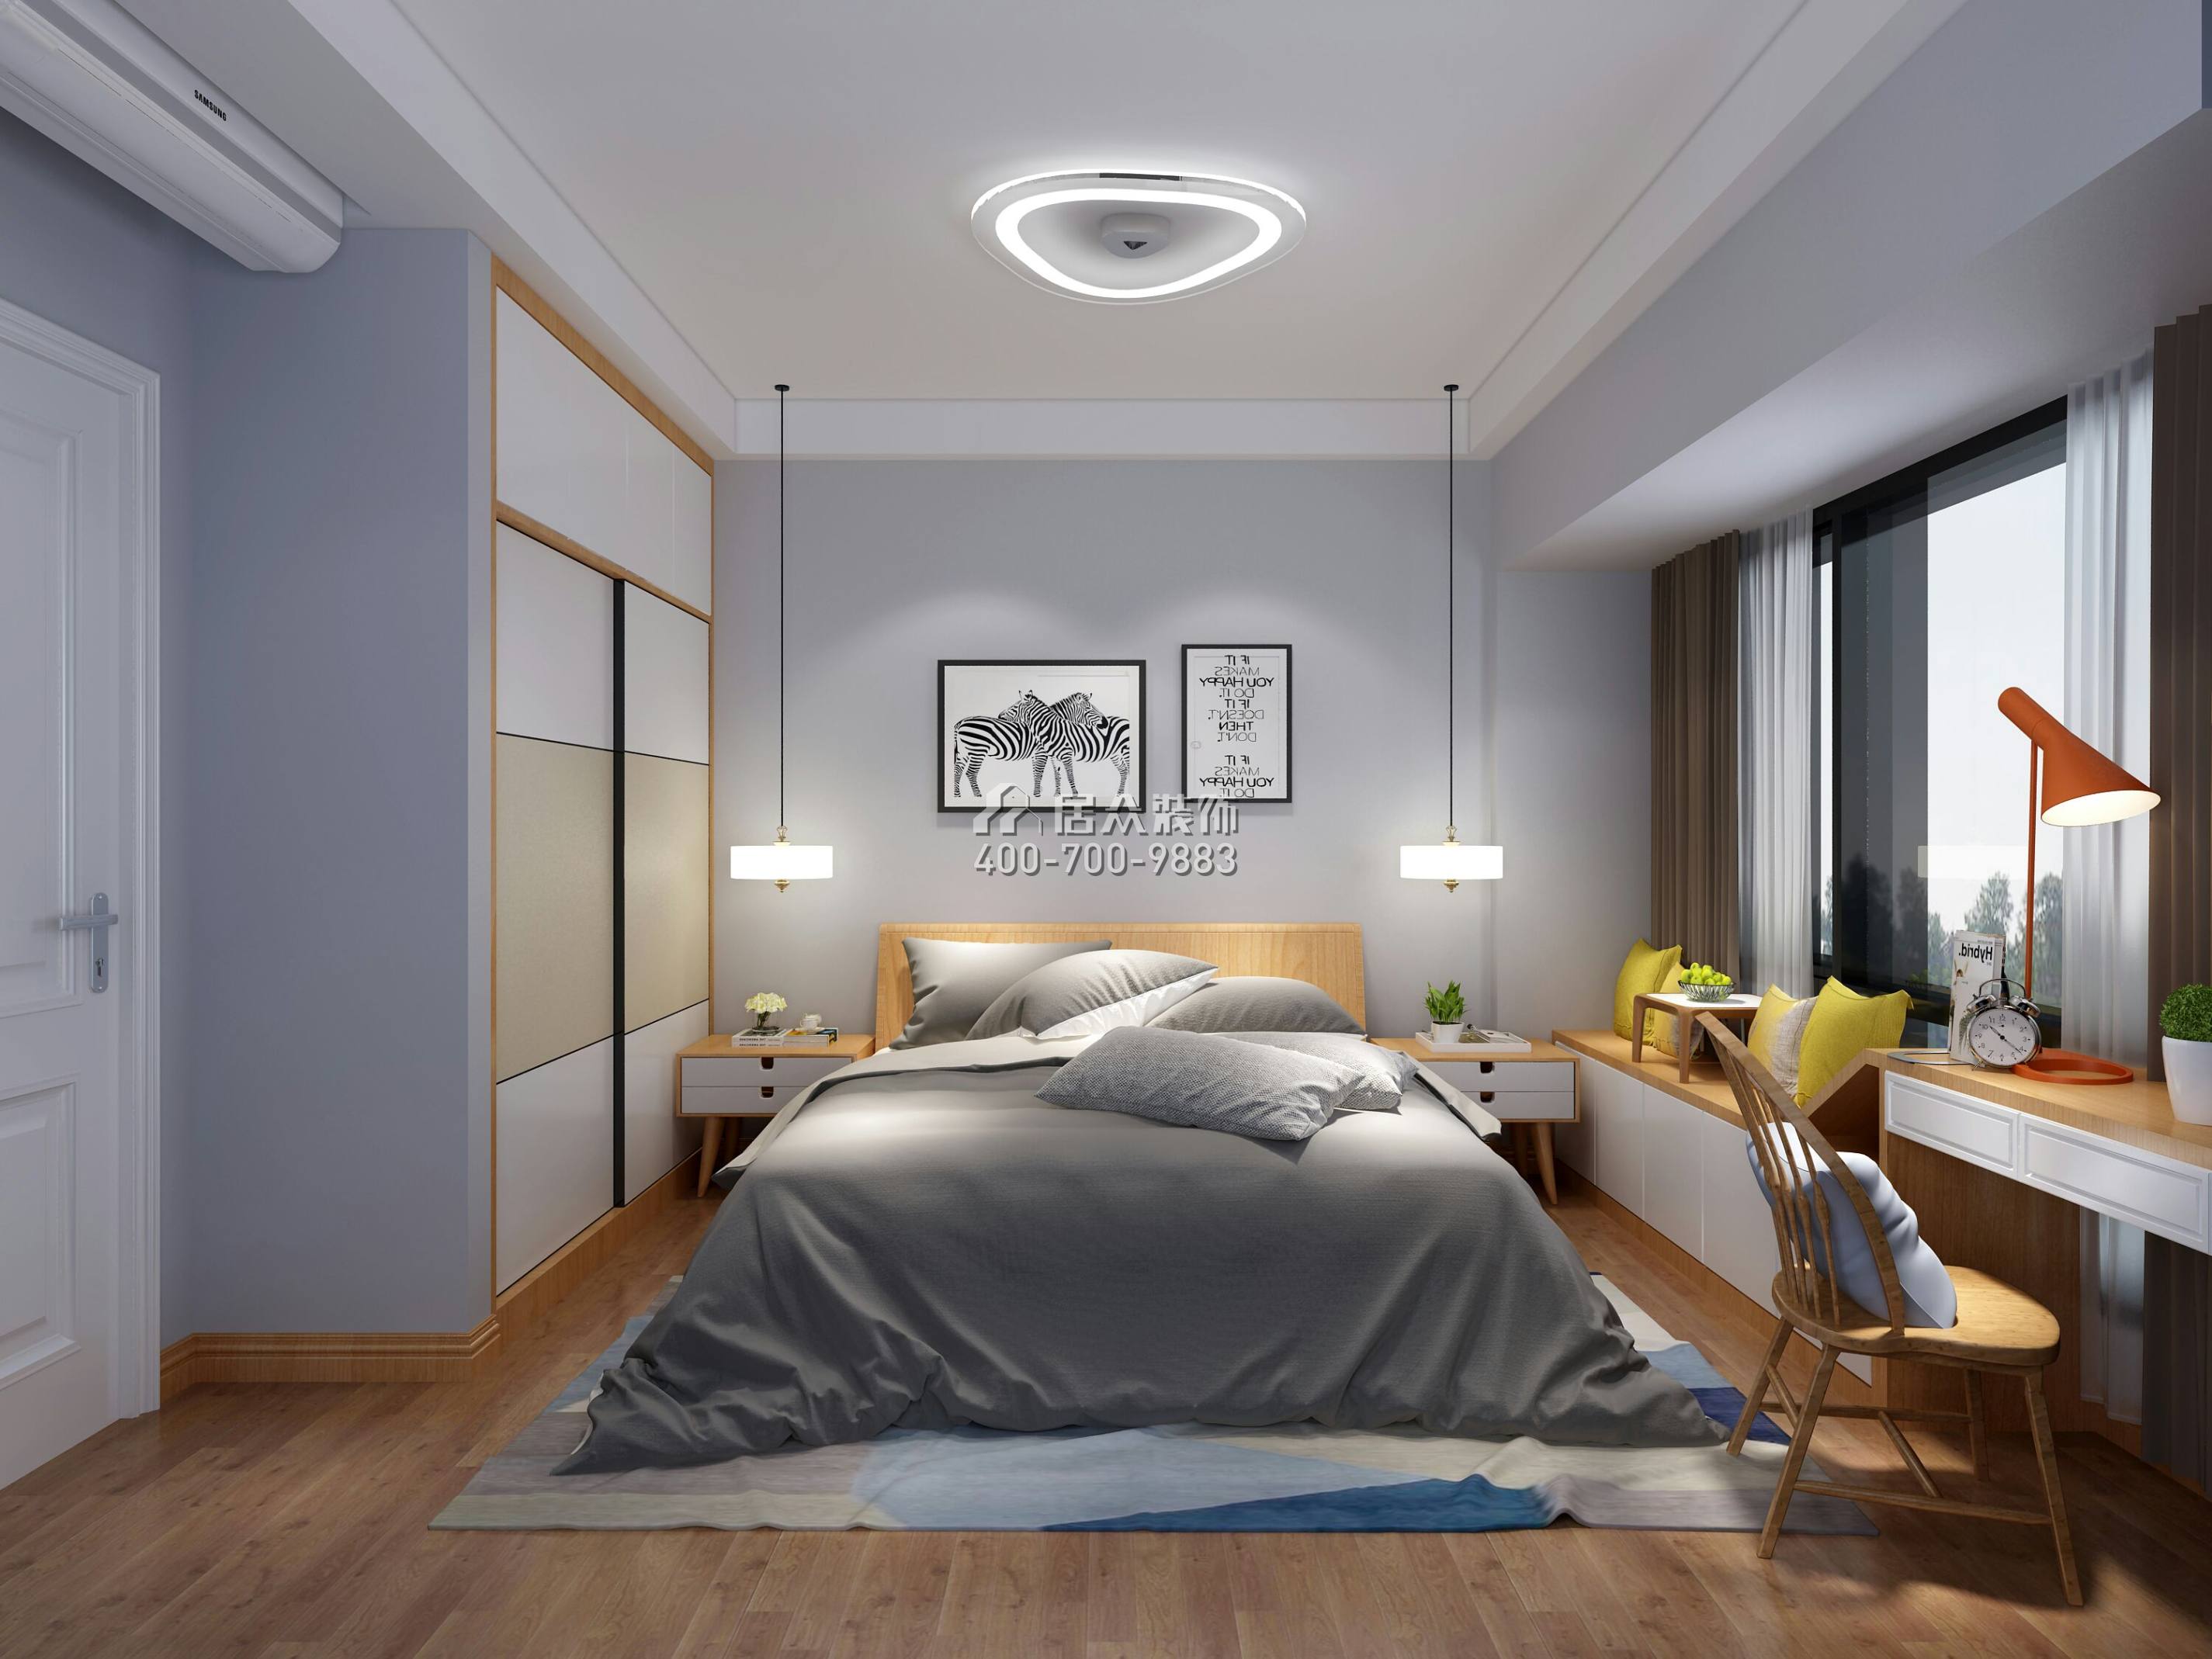 联投东方华府二期79平方米北欧风格平层户型卧室装修效果图